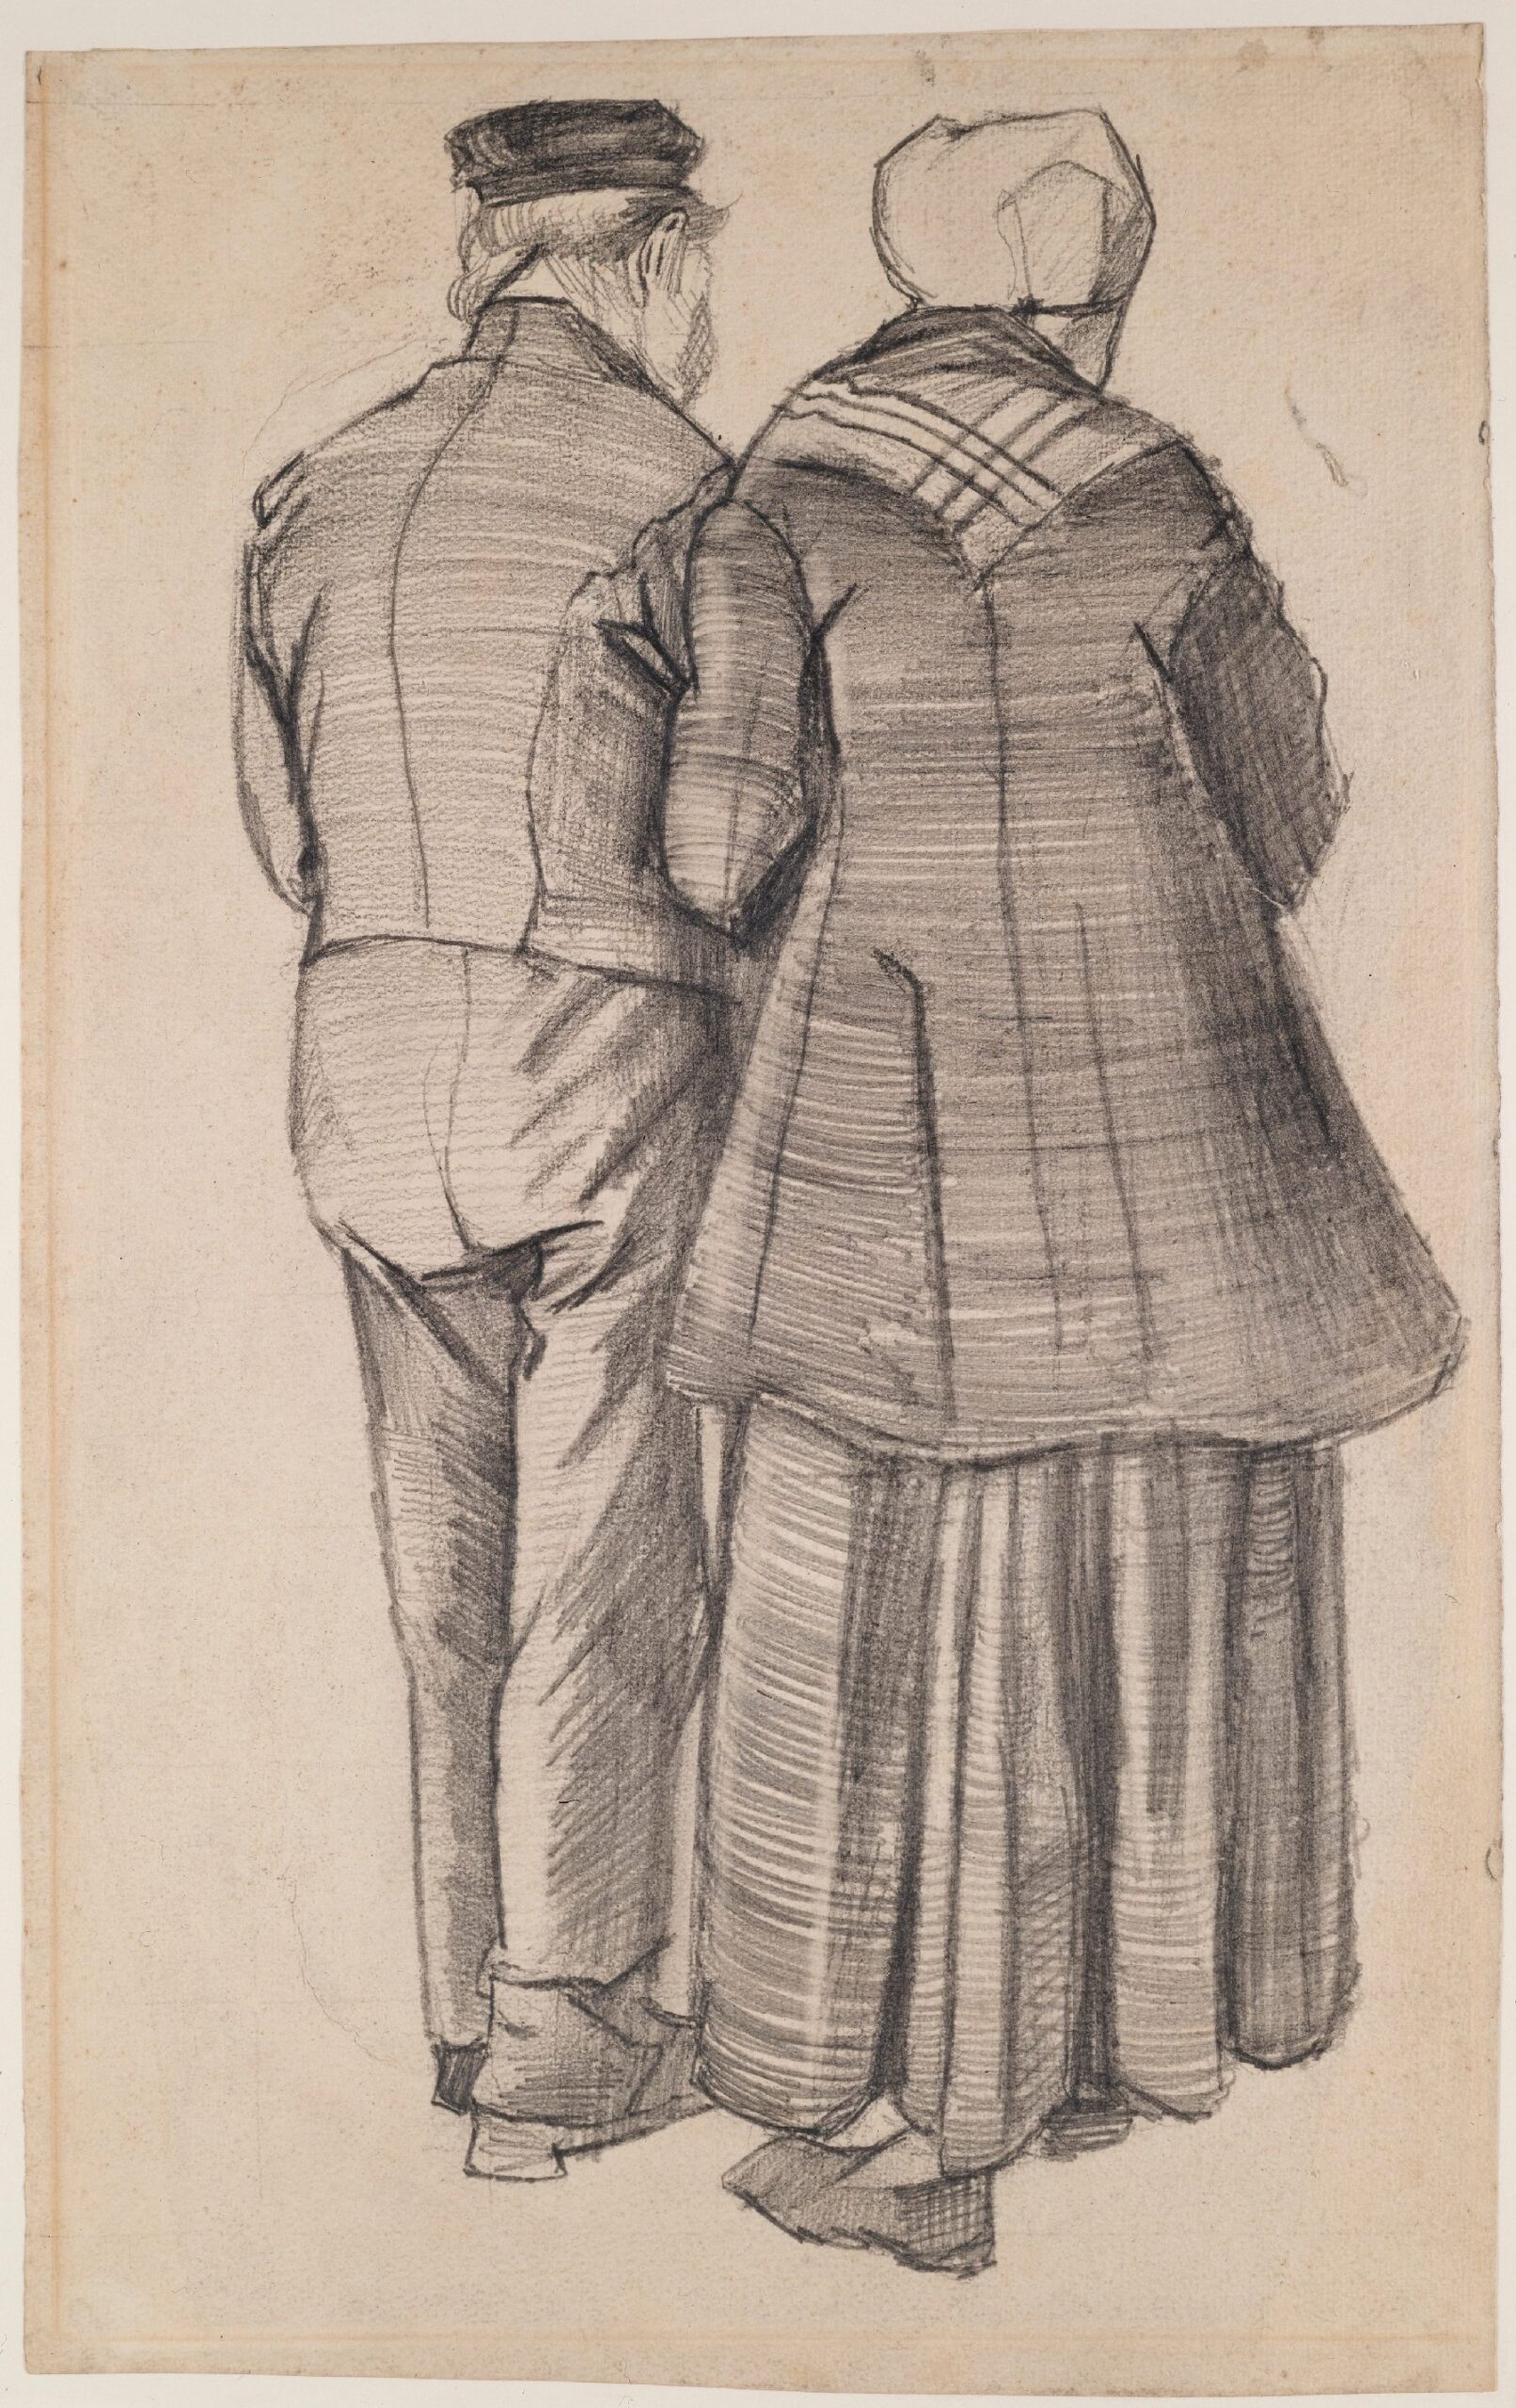 Man en vrouw op de rug gezien Vincent van Gogh (1853 - 1890), Den Haag, september-december 1882